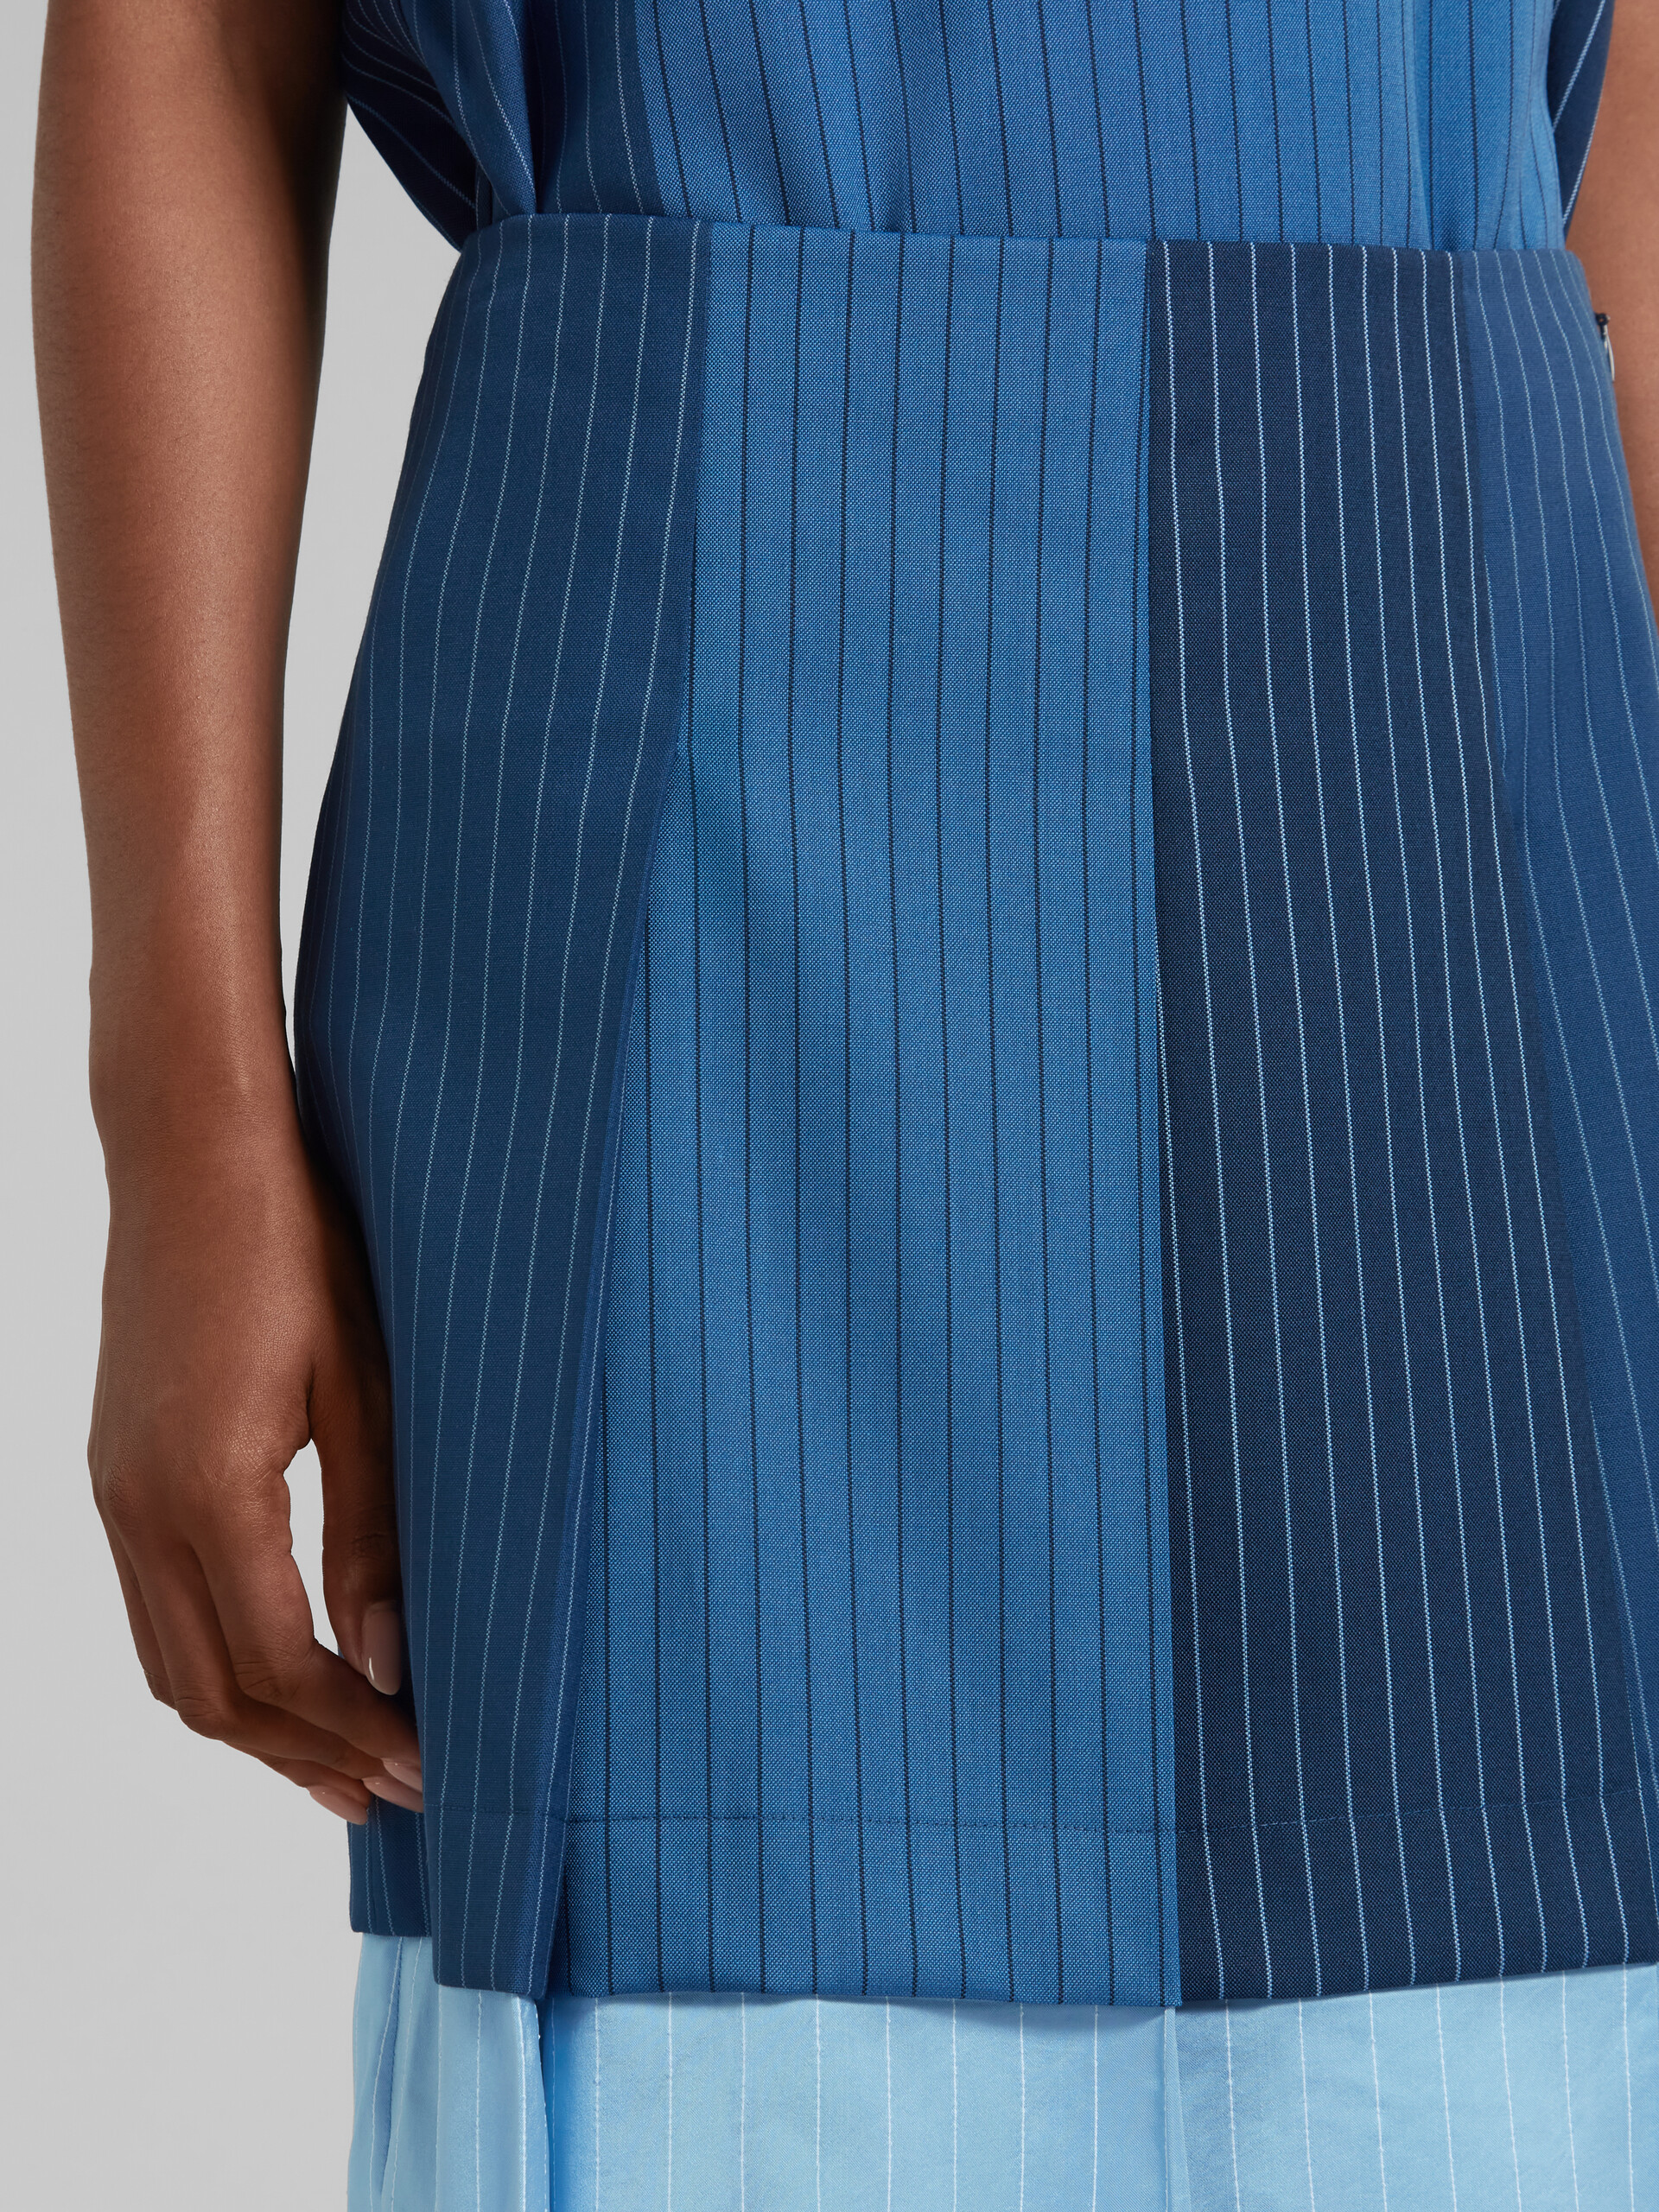 Minifalda de lana azul degradado con raya diplomática y plisados - Faldas - Image 3